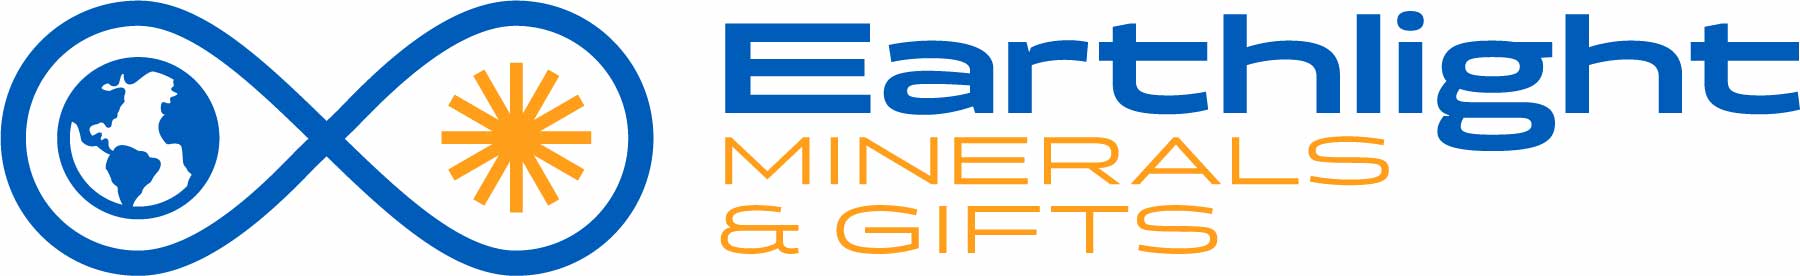 Earthlight Minerals & Gifts – Earthlight Minerals & Gifts